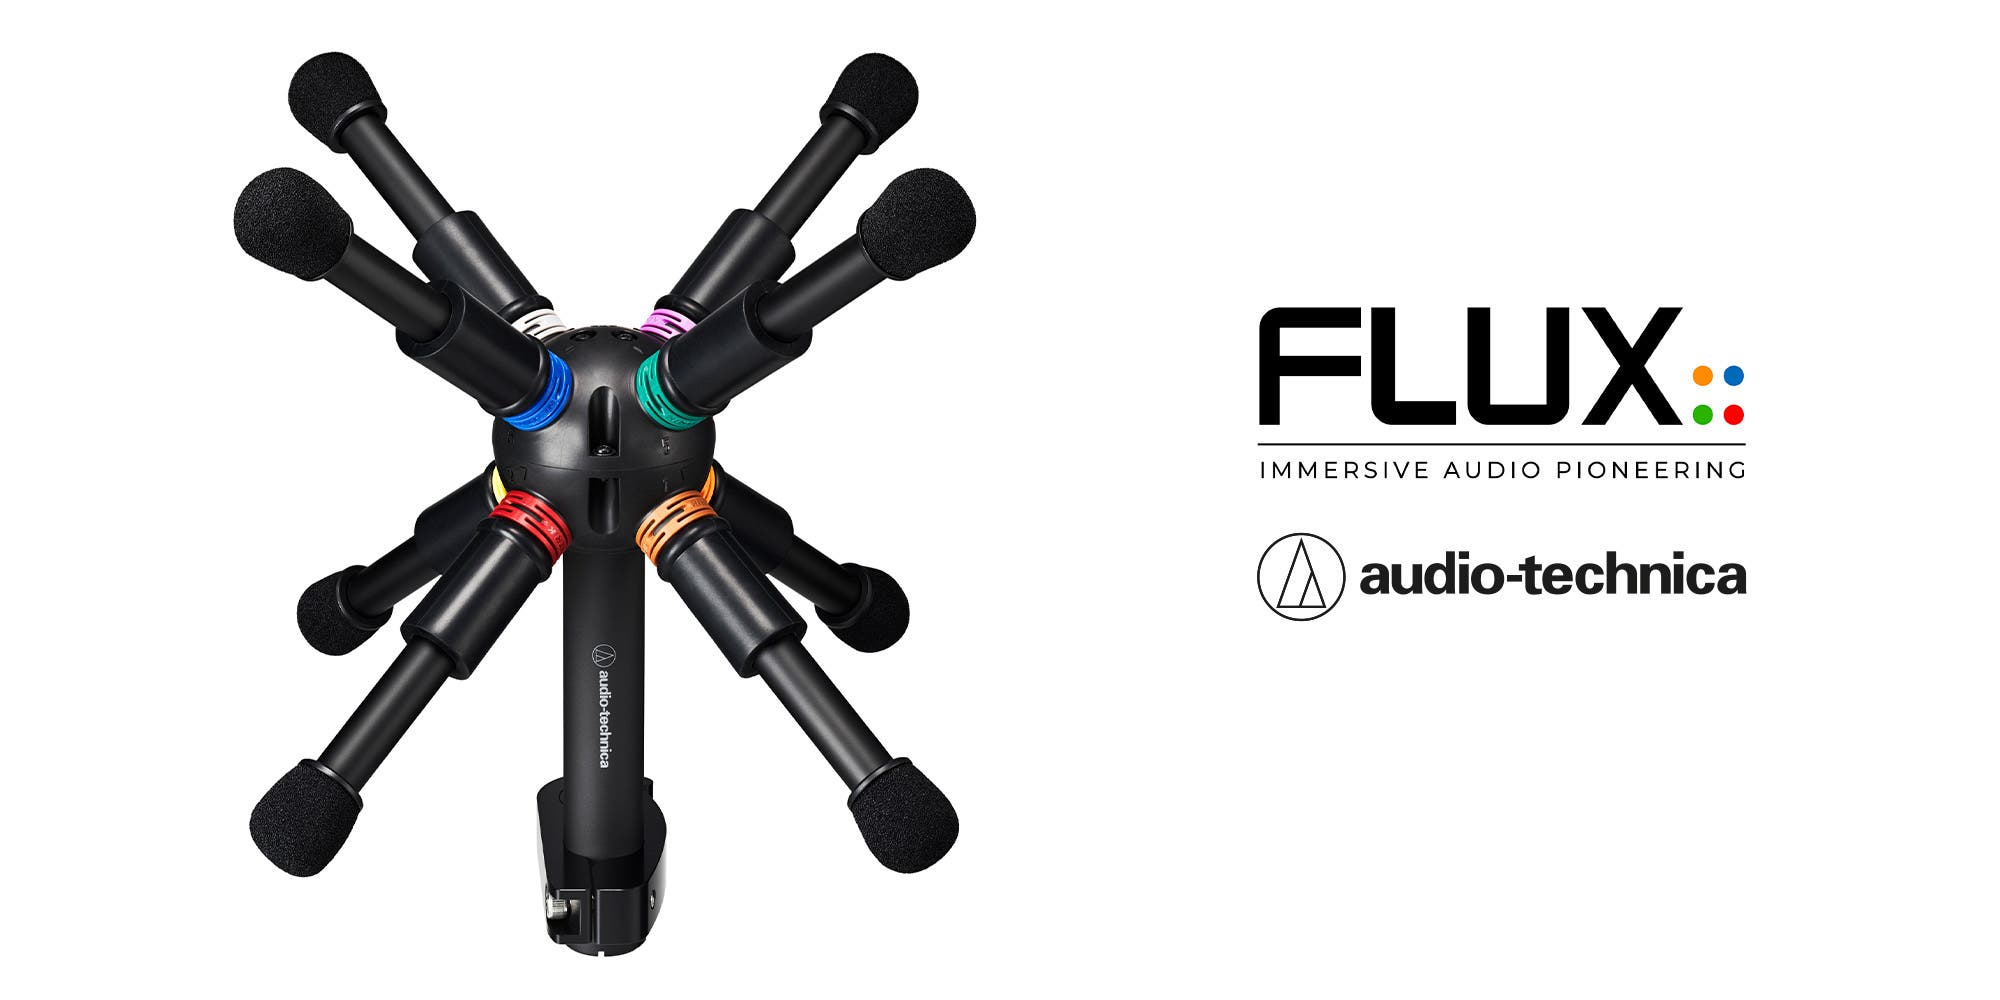 Audio-Technica avec son microphone BP3600 et Flux::Immersive présentent une puissante solution matériel/logiciel pour l’audio immersif